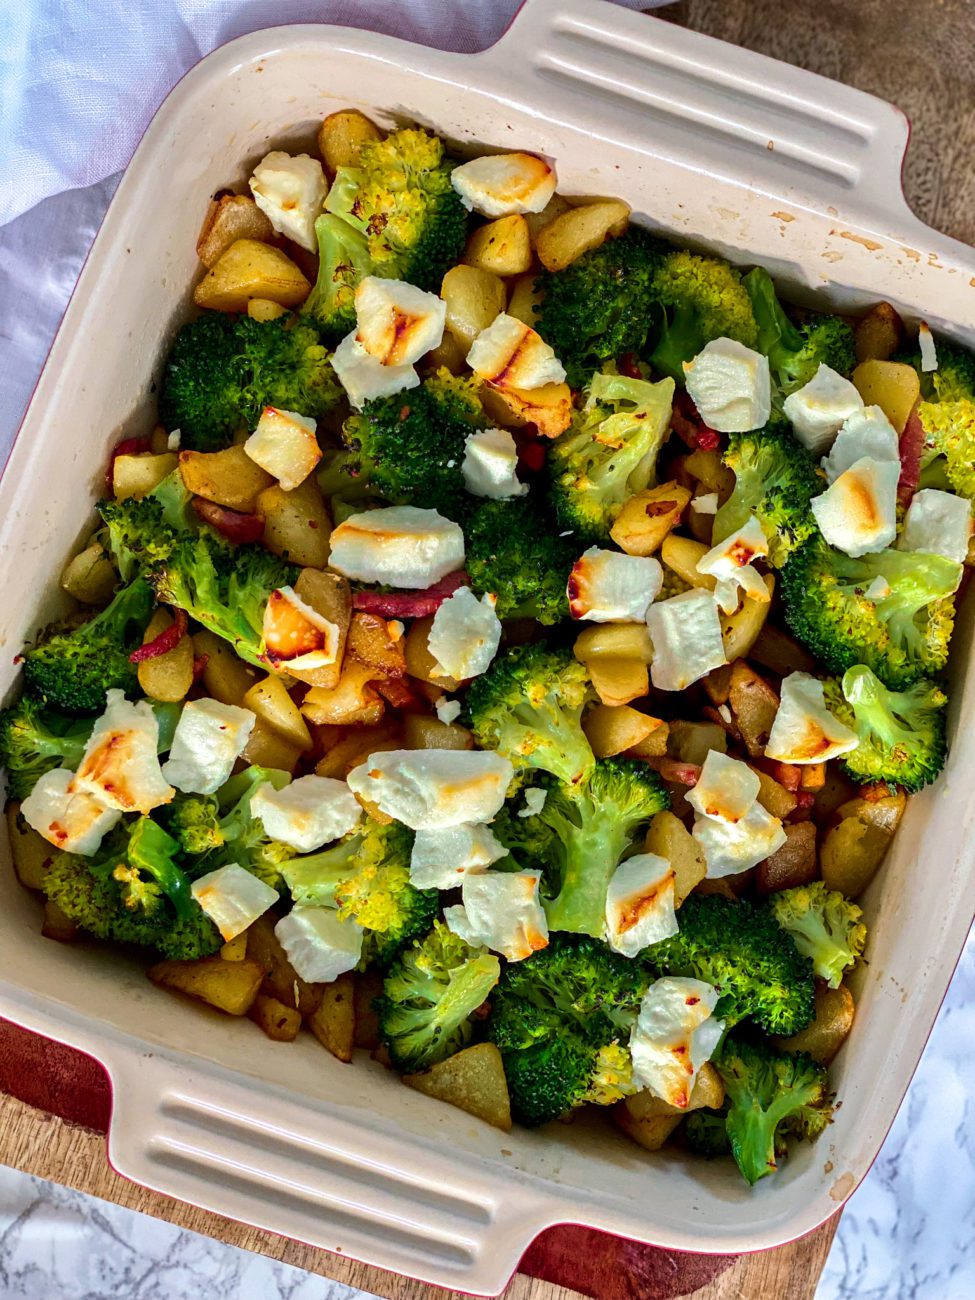 Broccoli met aardappeltjes en spek uit de oven